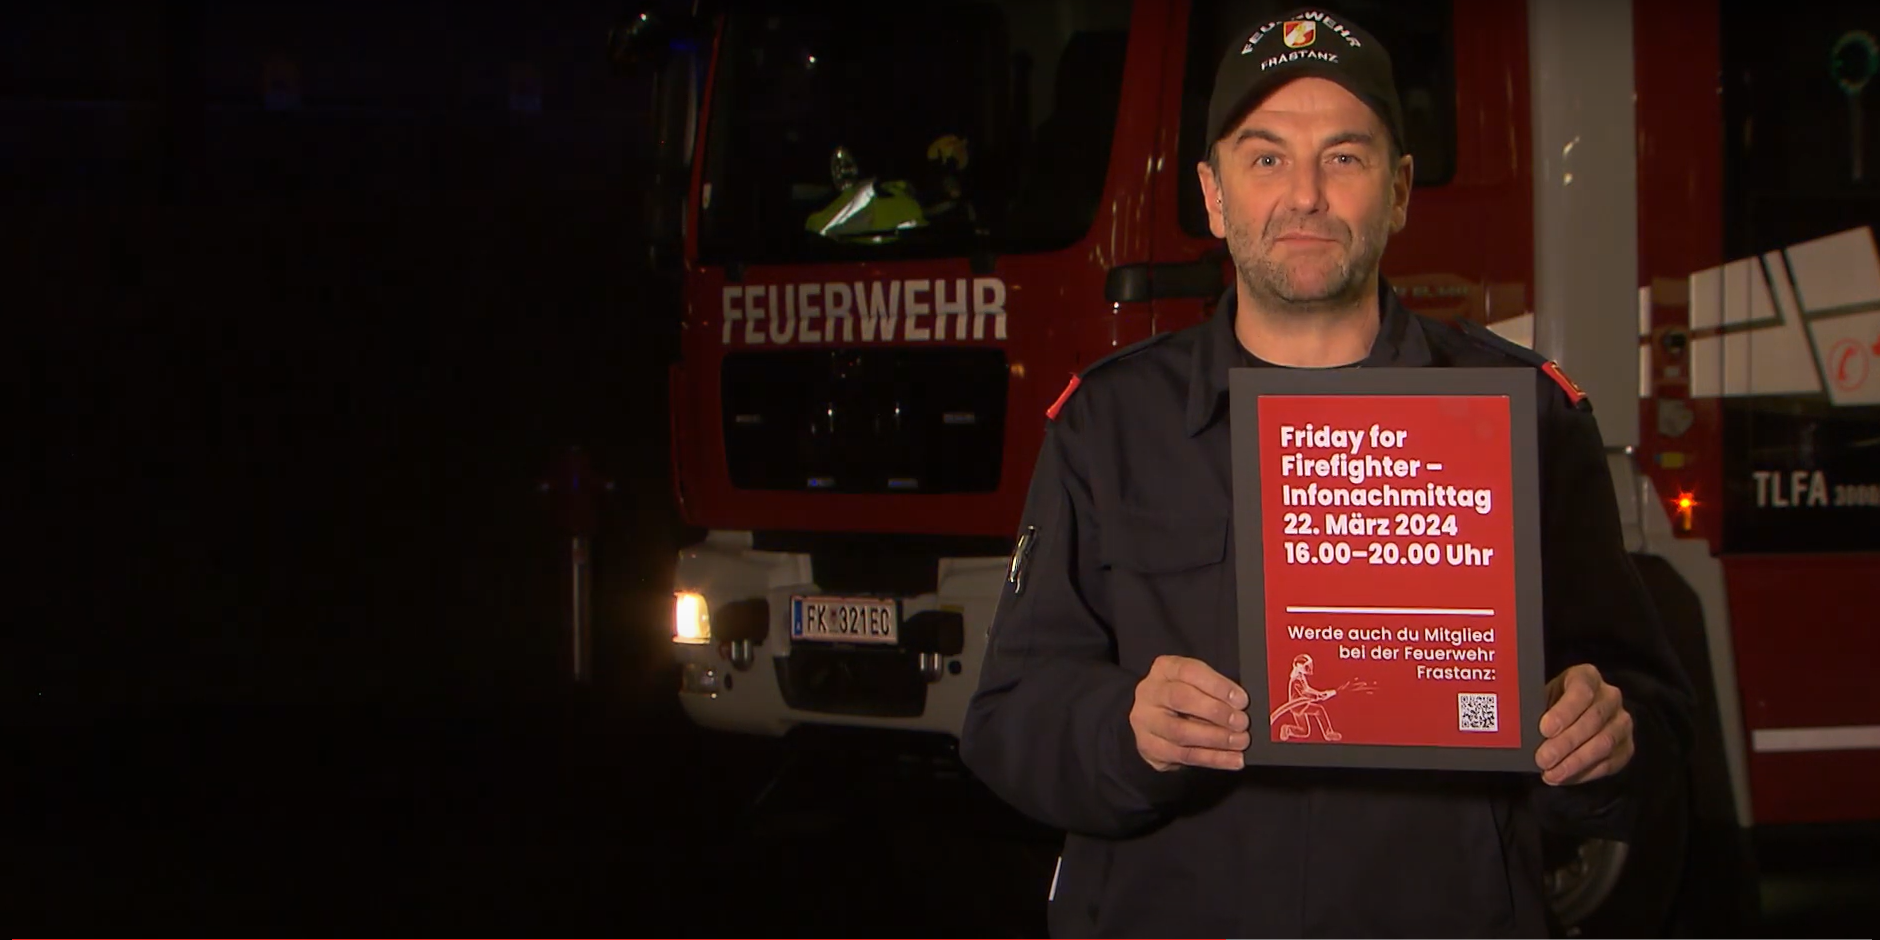 Friday for Firefighter - 22. März 2024